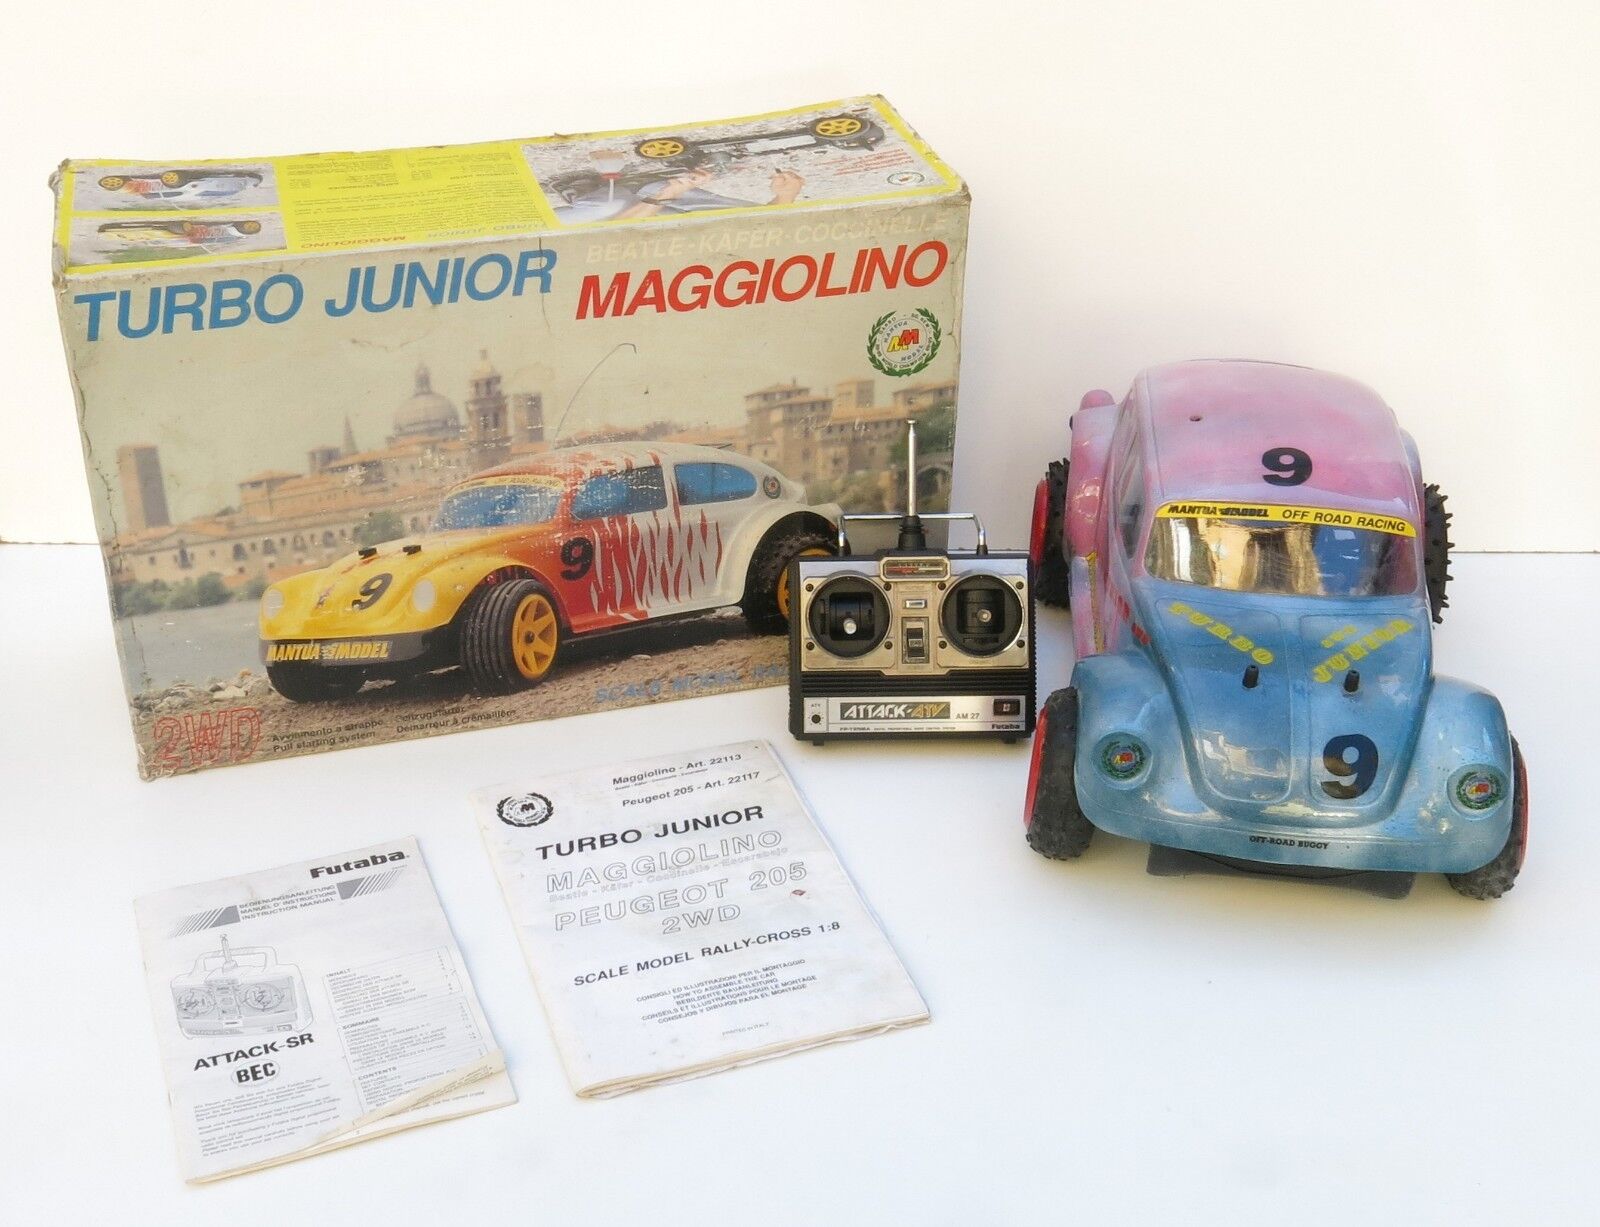 Radiocomando turbo junior maggiolino mantua rc car a scoppio rarità vintage 1/8 